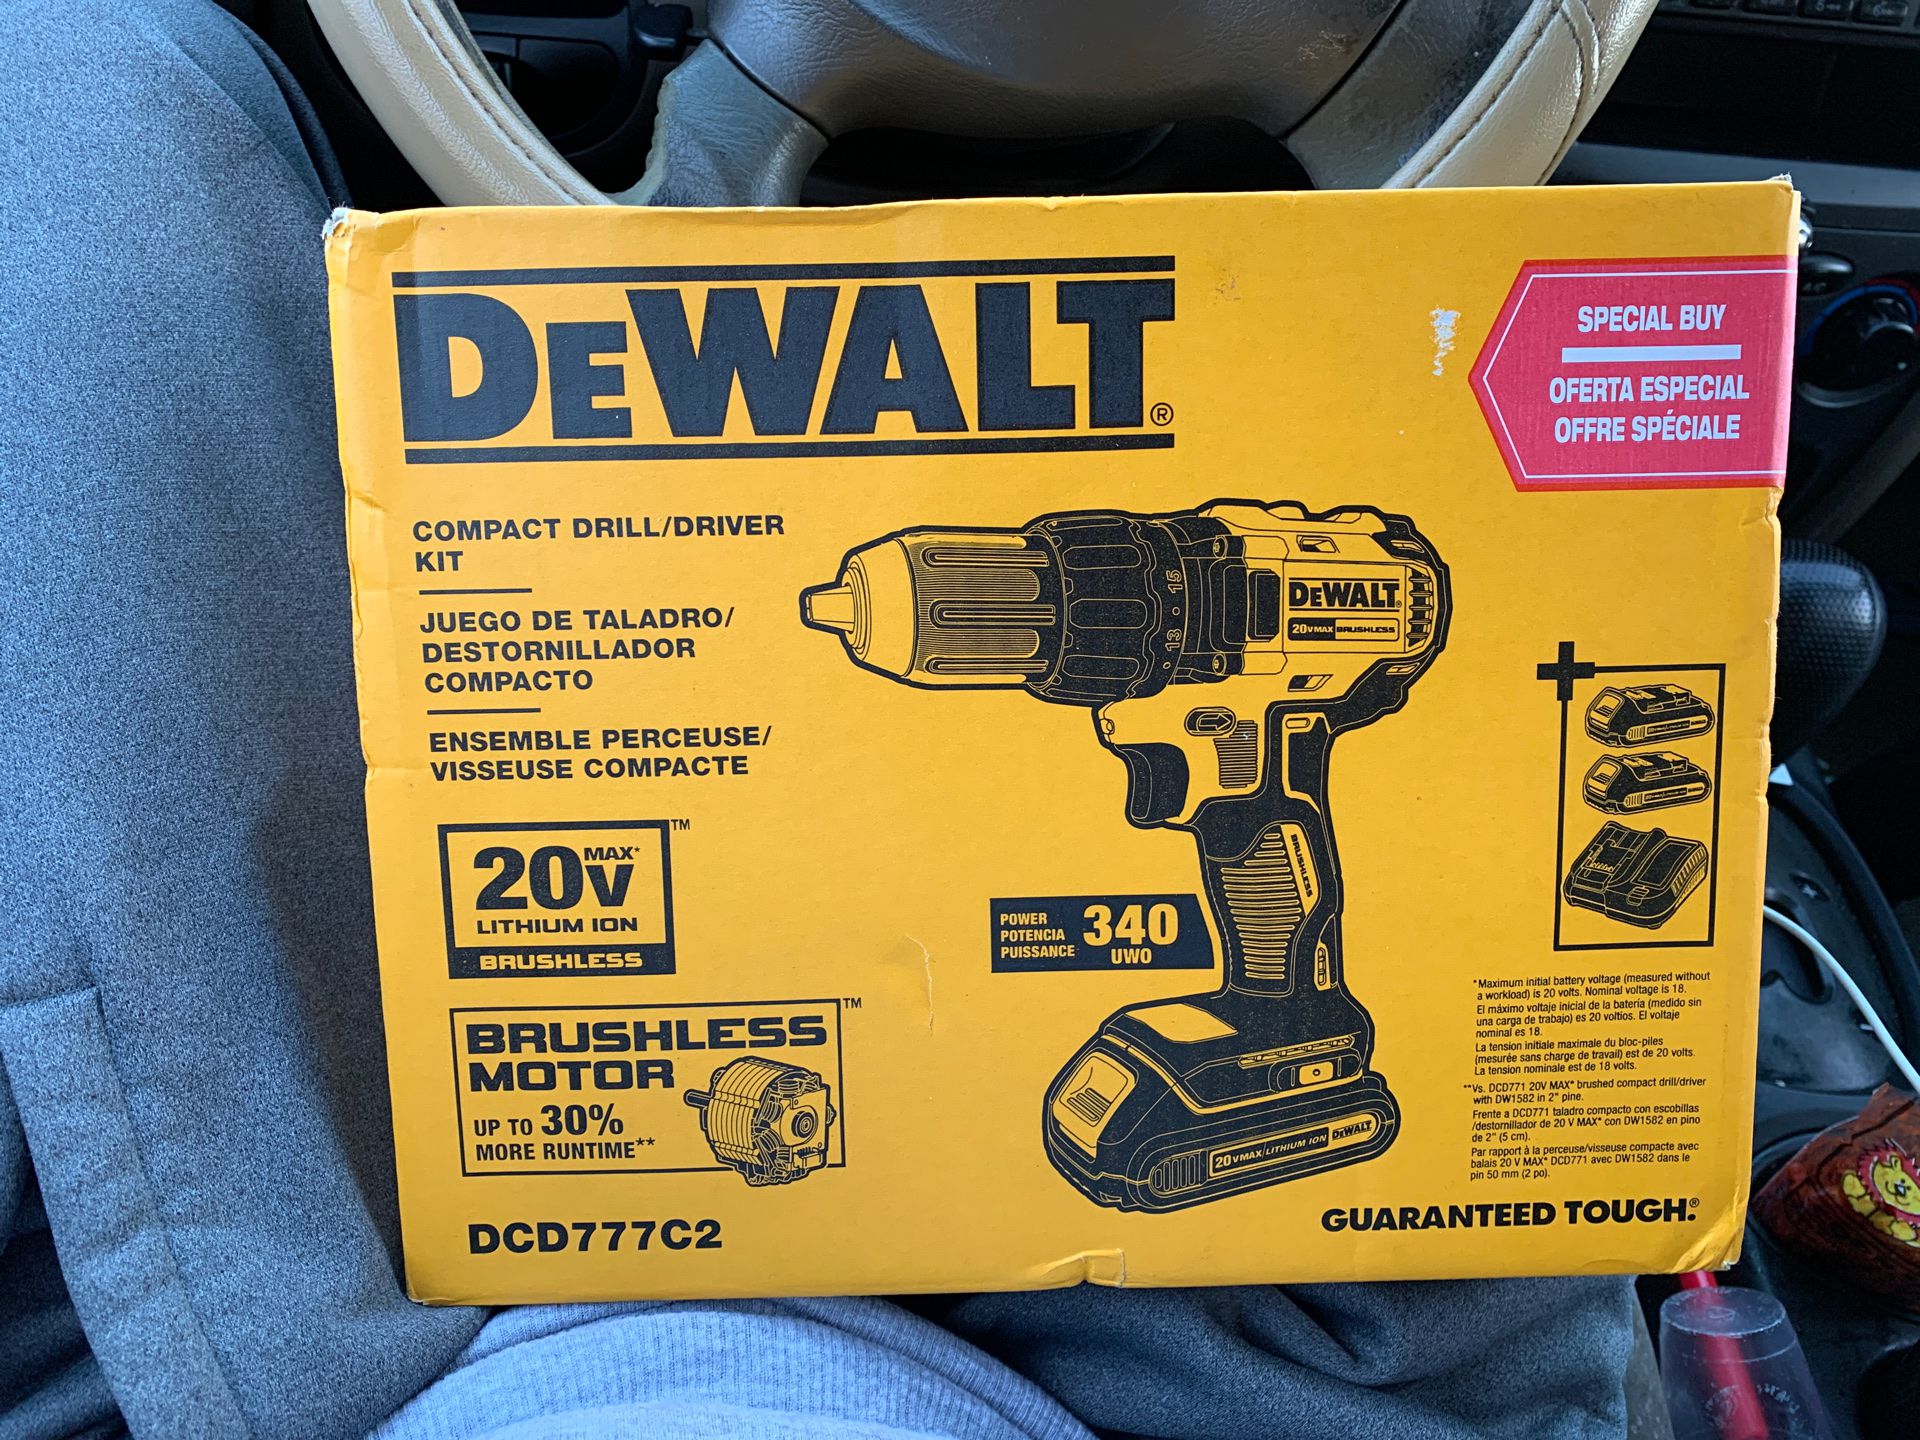 DeWalt compact drill/ driver kit